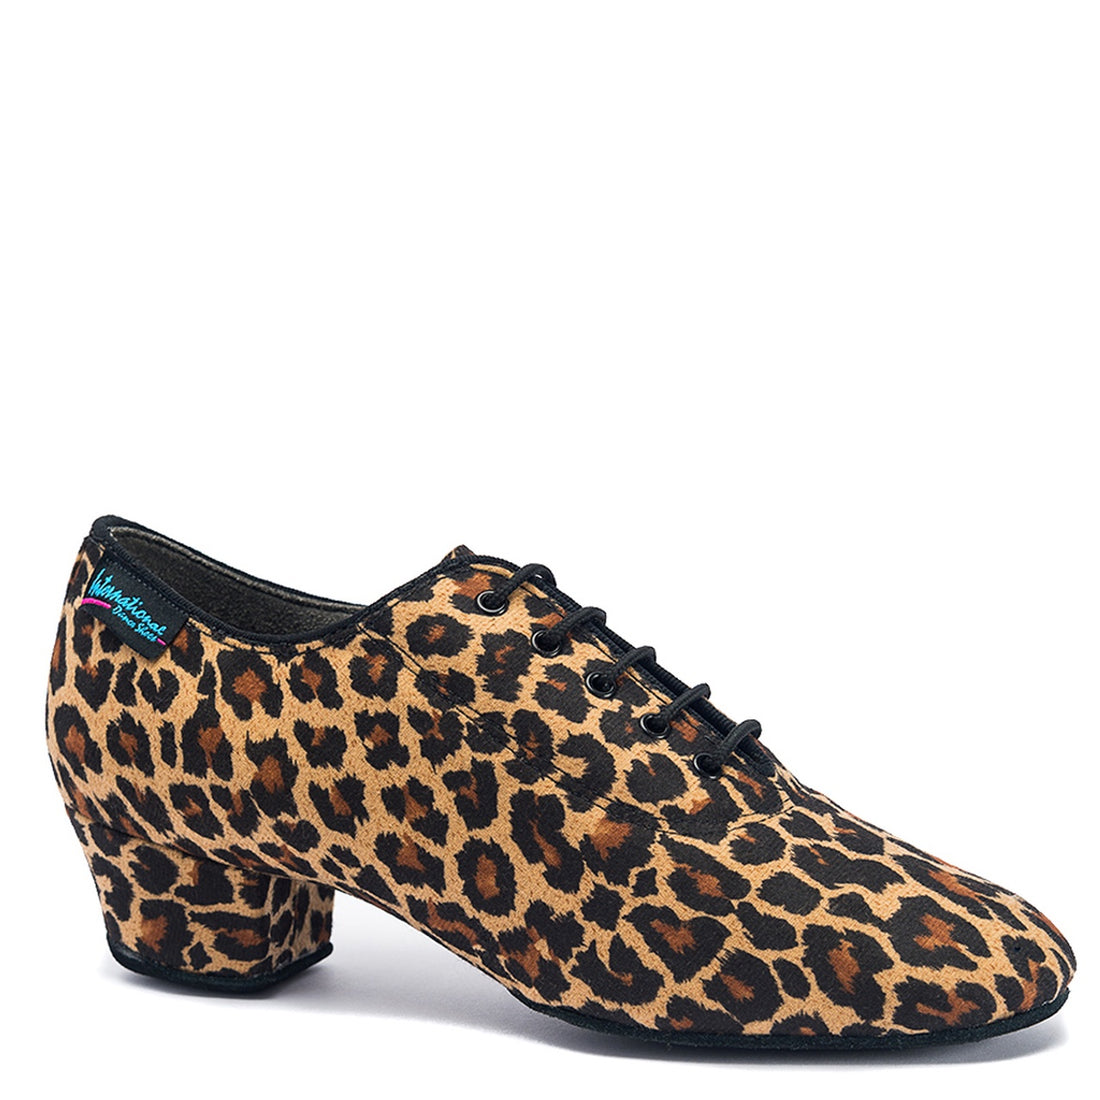 International Dance Shoes Heather Split Sole - Leopard